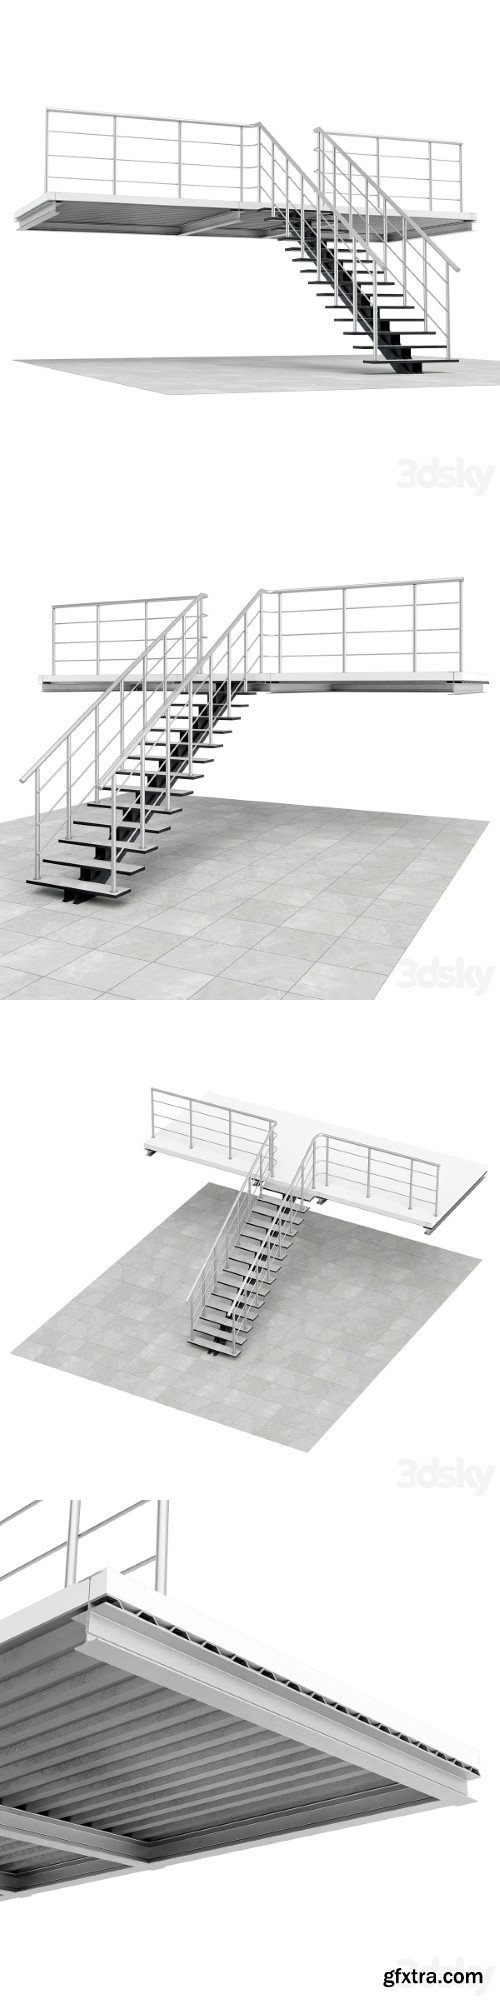 Warehouse stairs | Corona